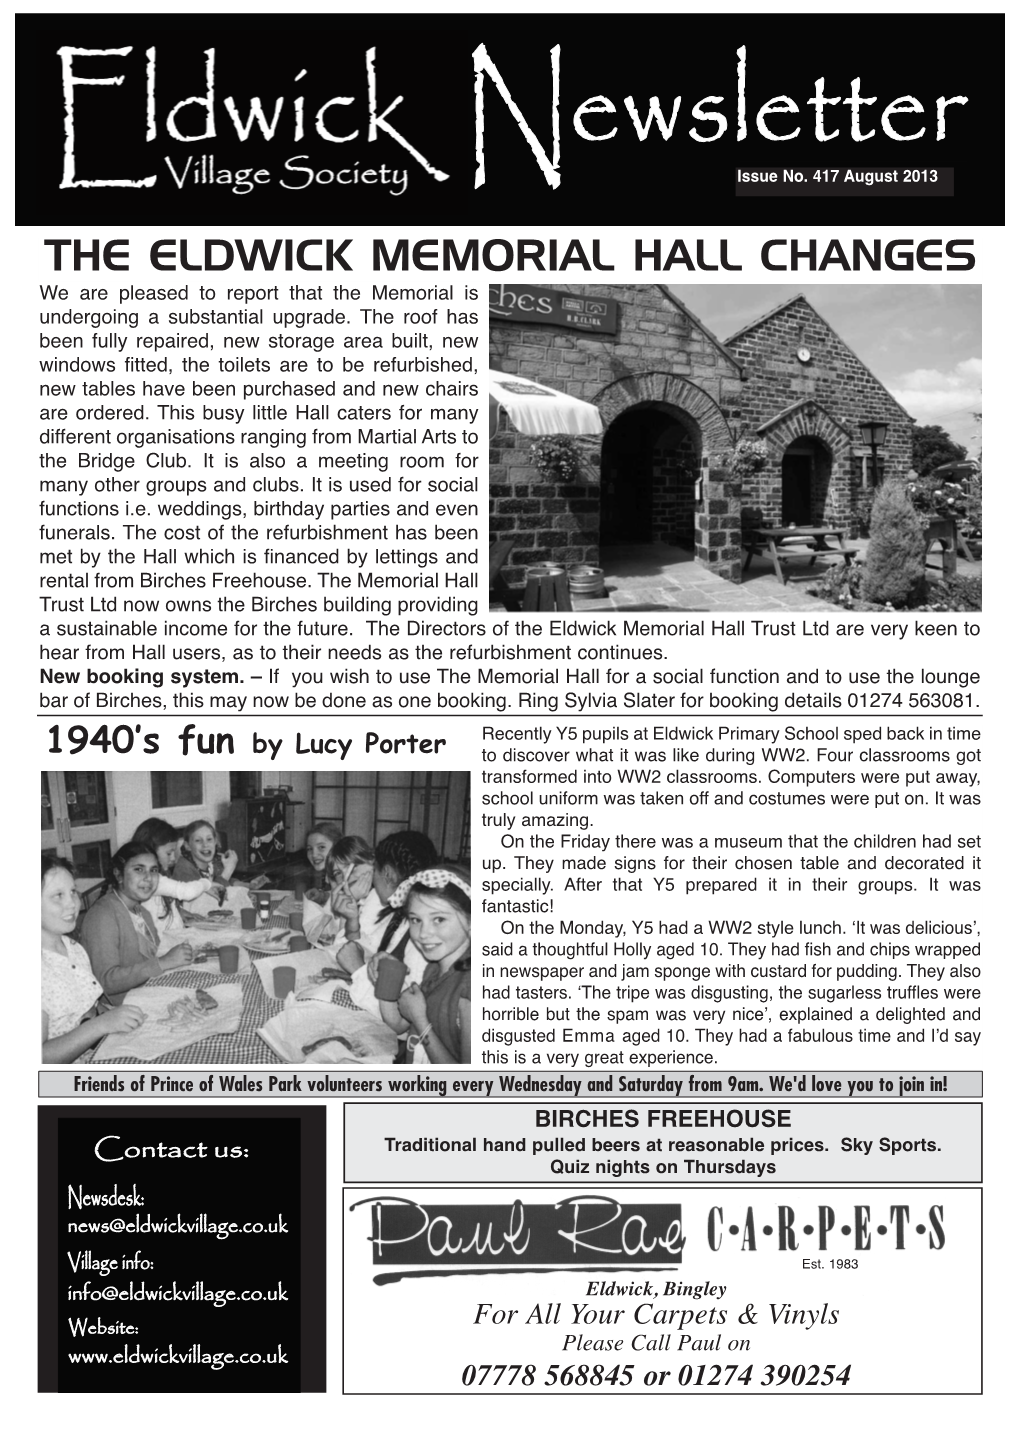 The Eldwick Memorial Hall Changes